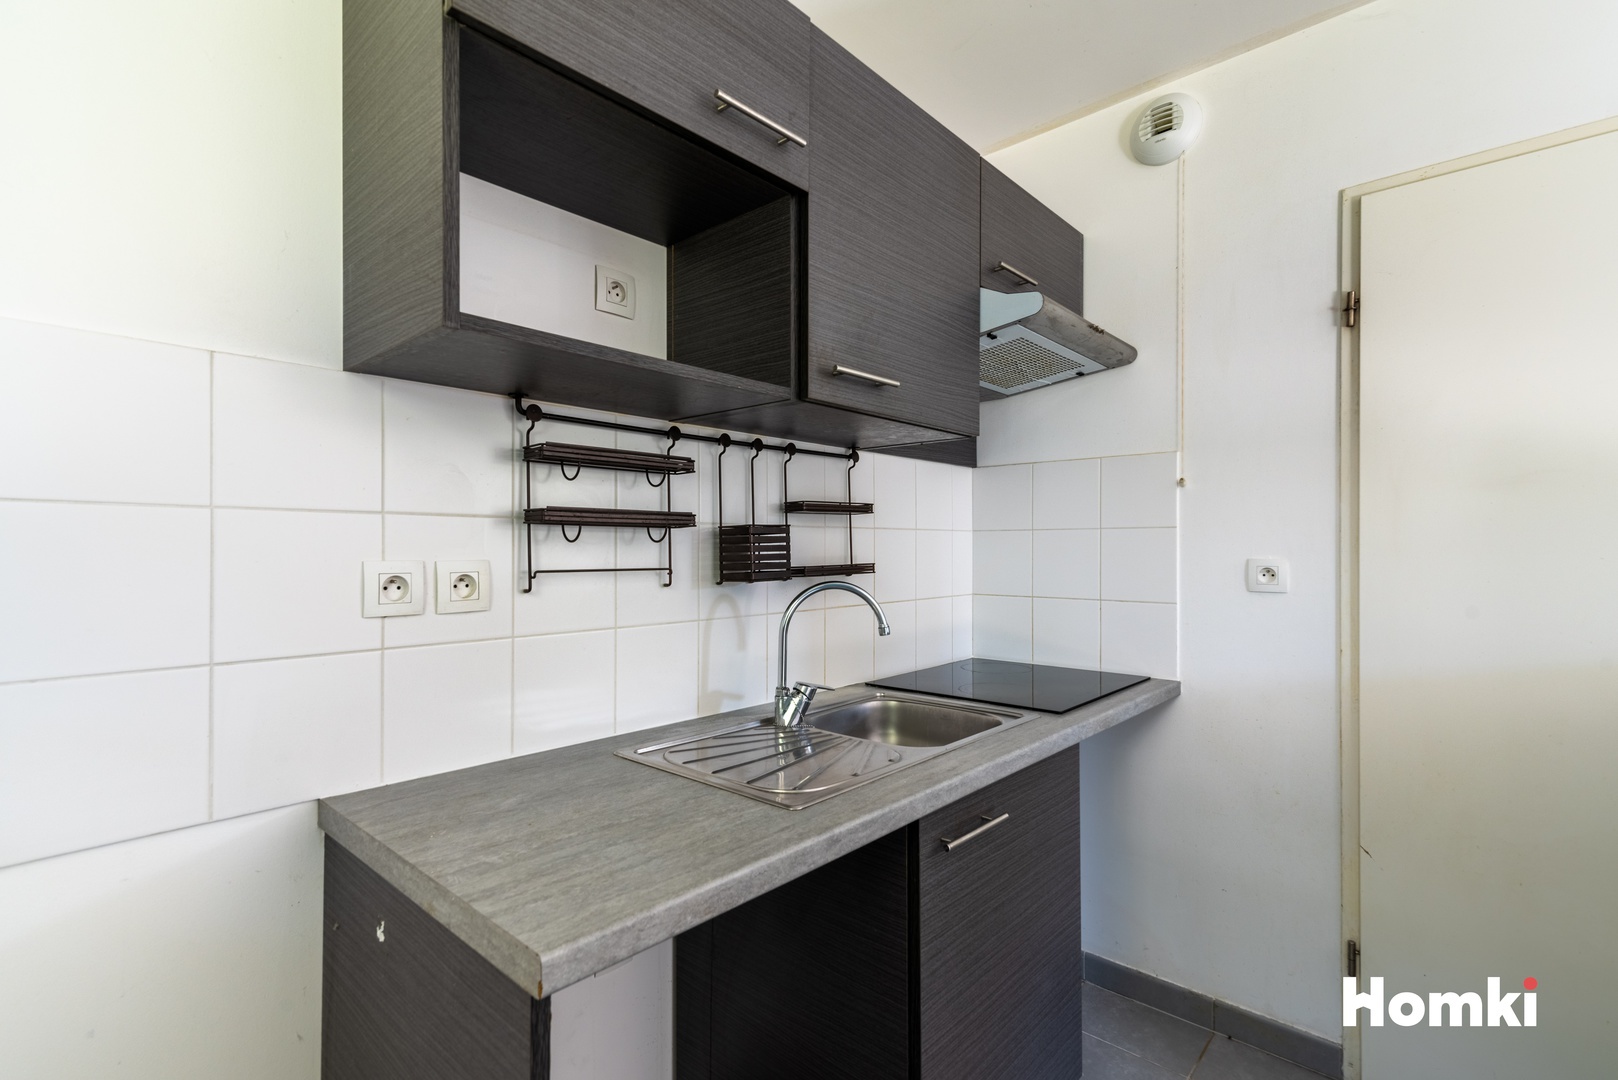 Homki - Vente Appartement  de 73.0 m² à Castanet-Tolosan 31320